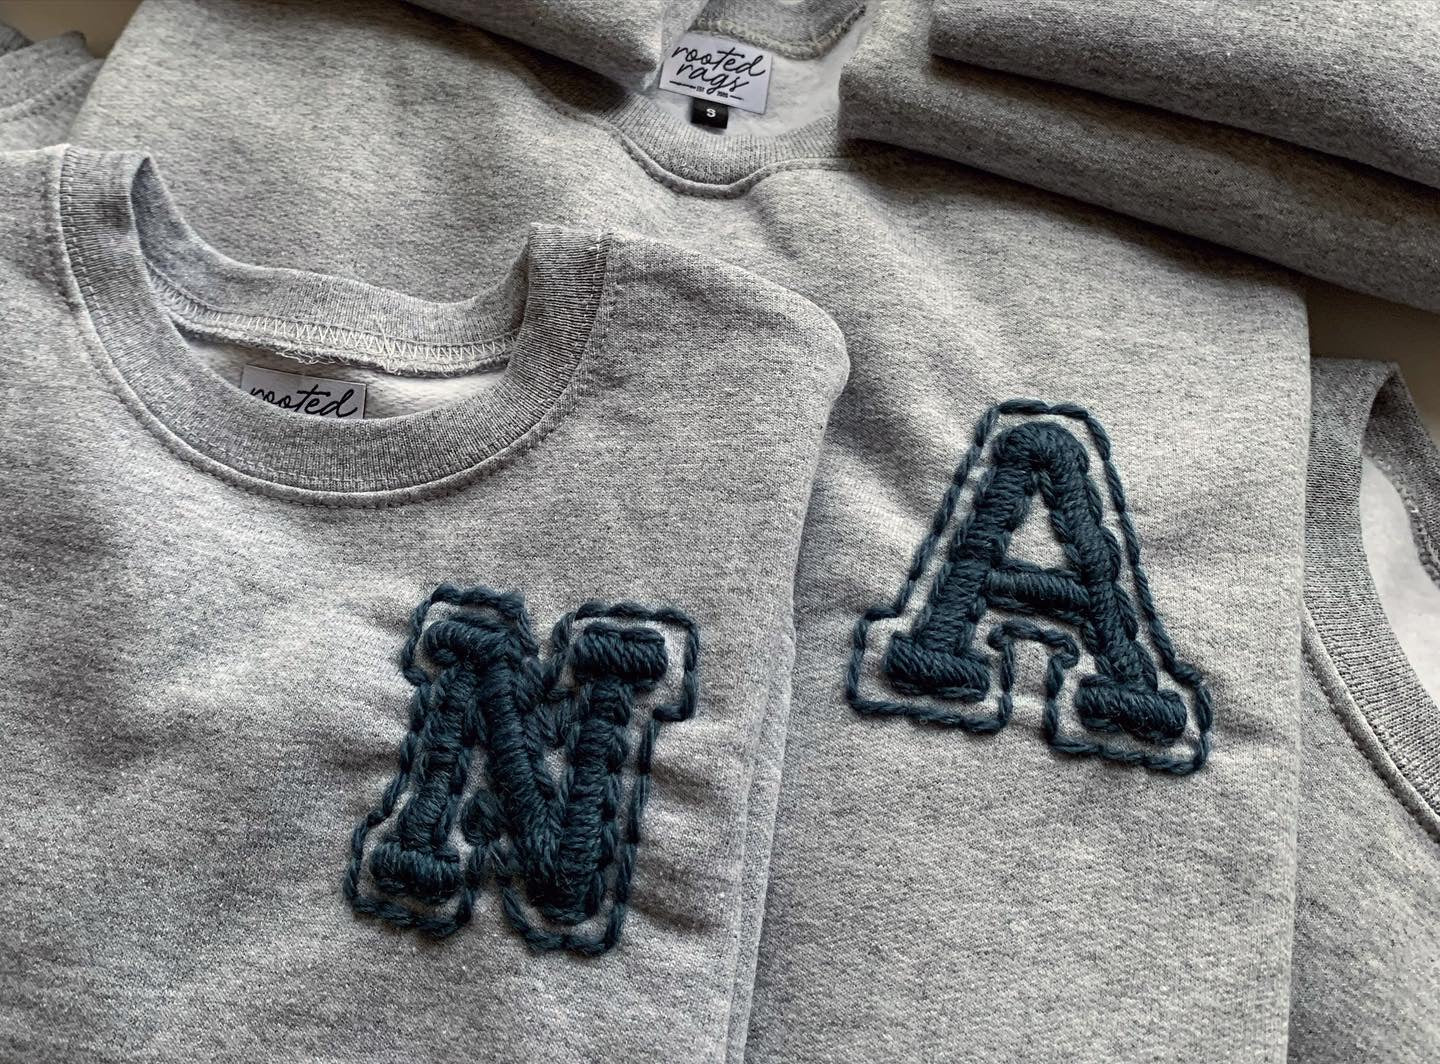 Varsity Letter Yarn Embroidered Adult Sweatshirt